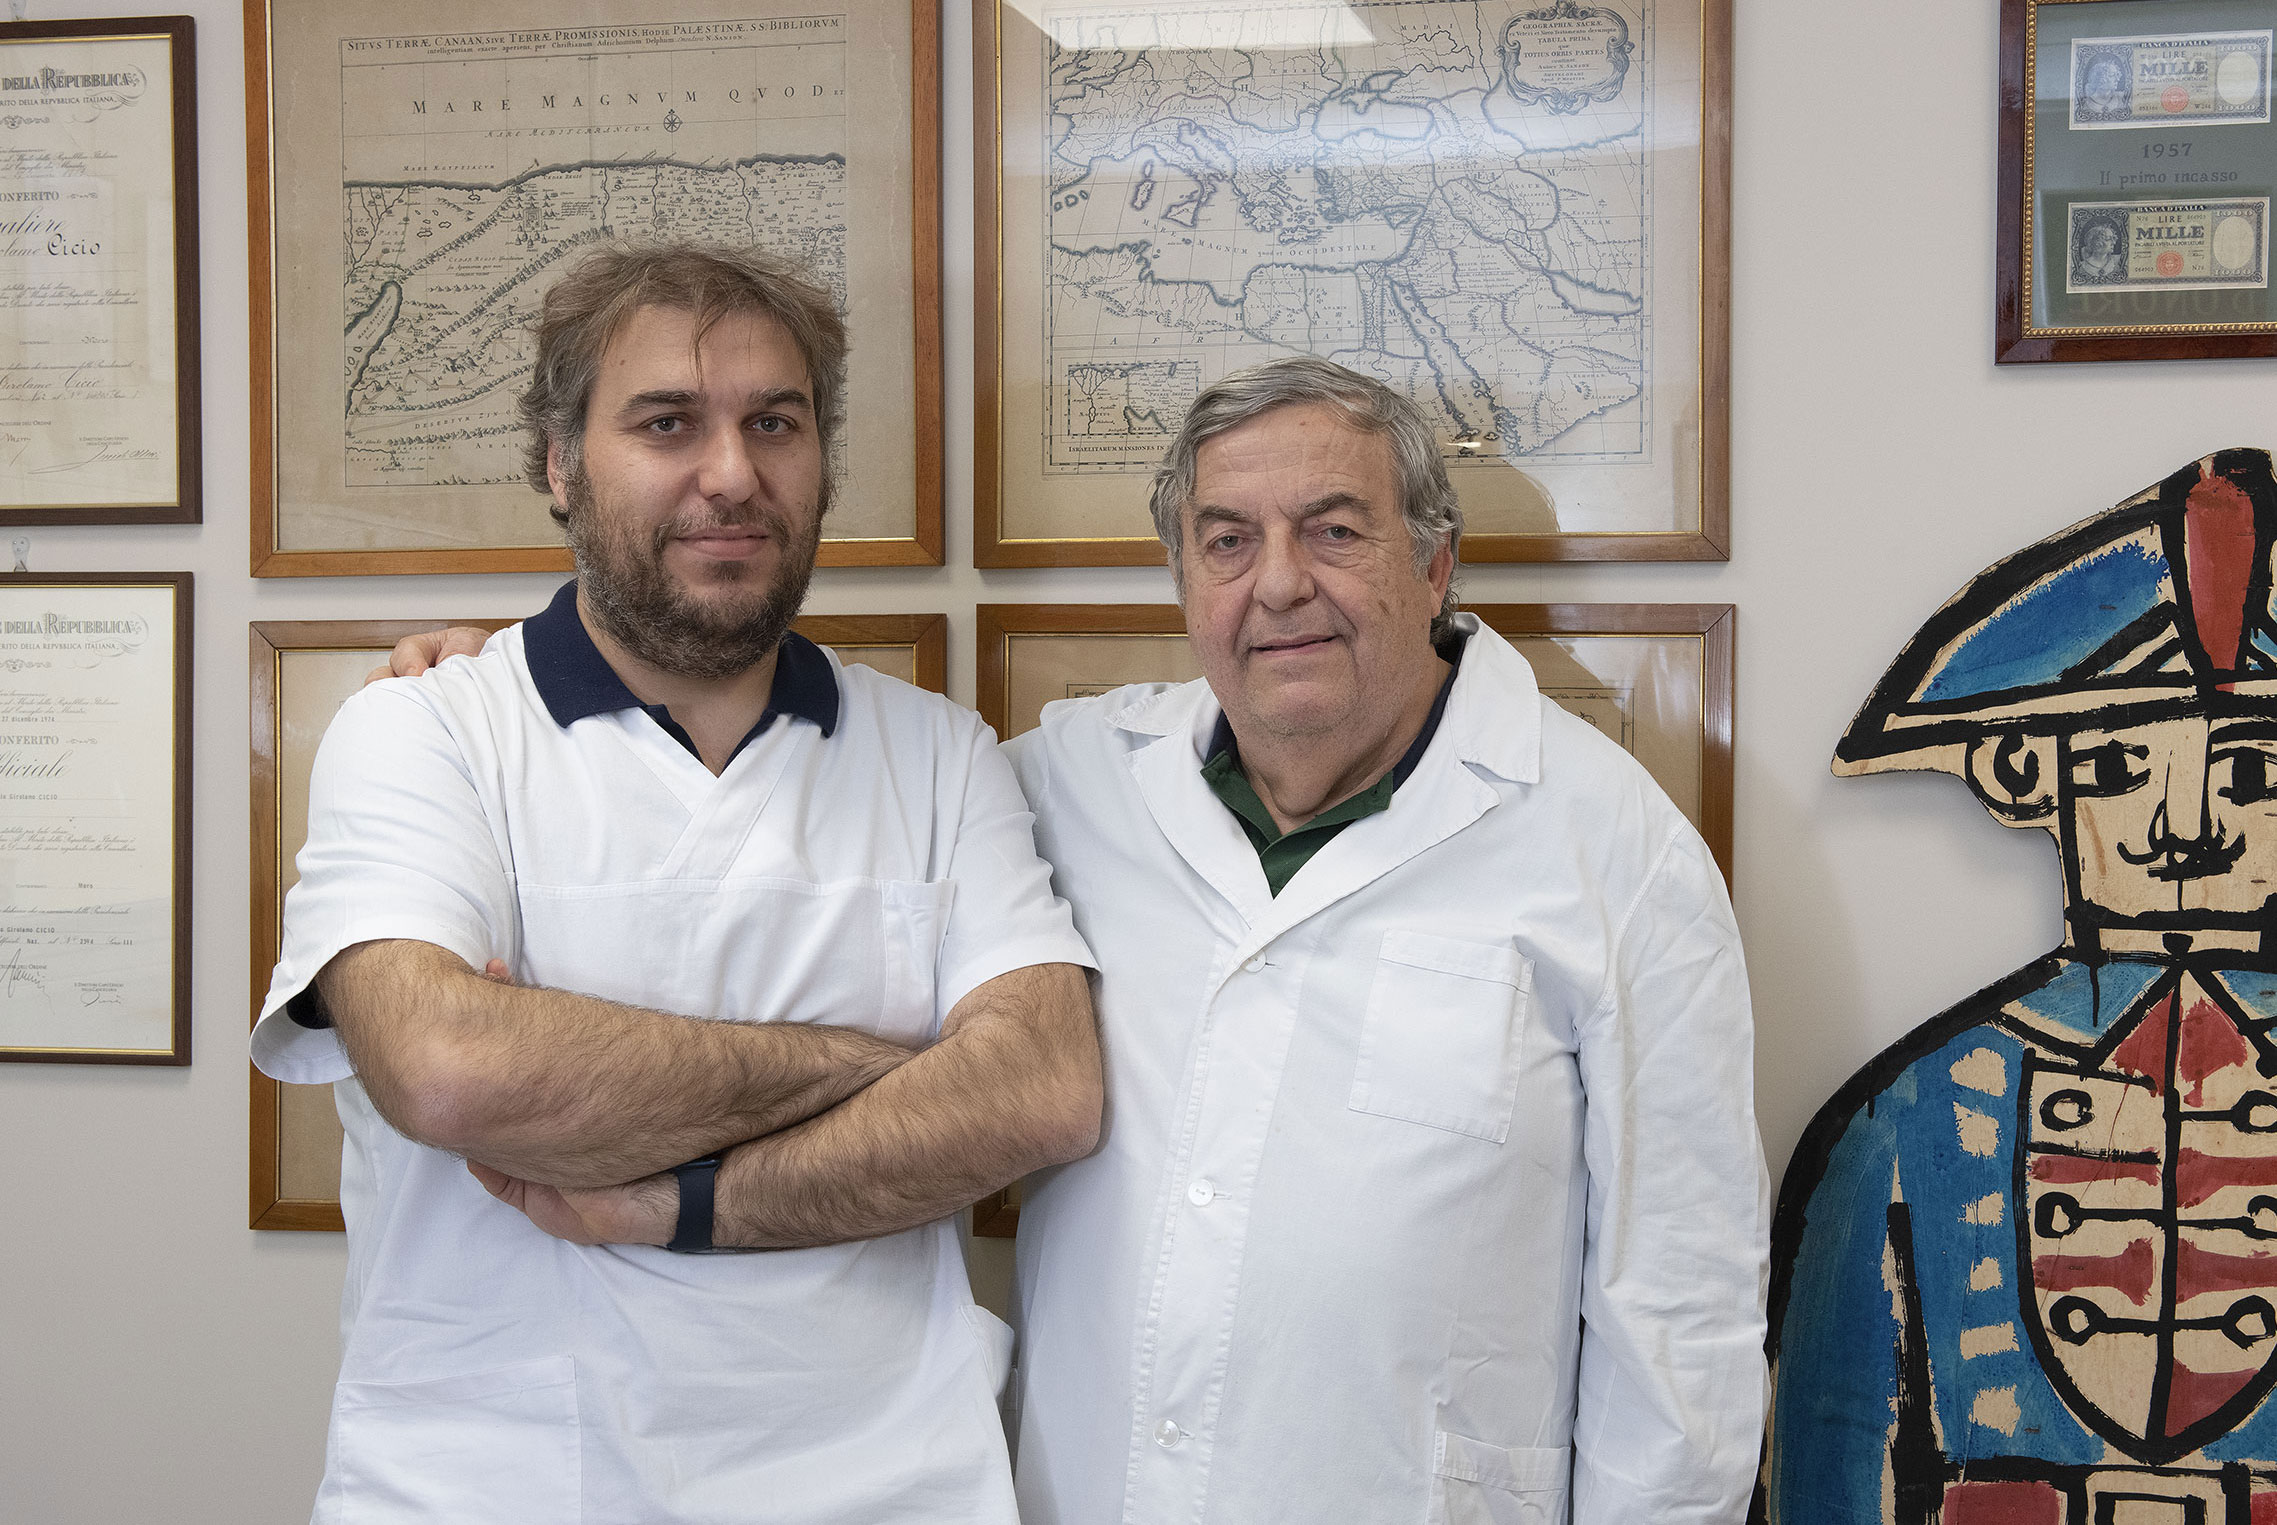 Istituto di Radiologia e Terapia Fisica Dr. Cicìo - Gianrosario e Gabriele Cicìo